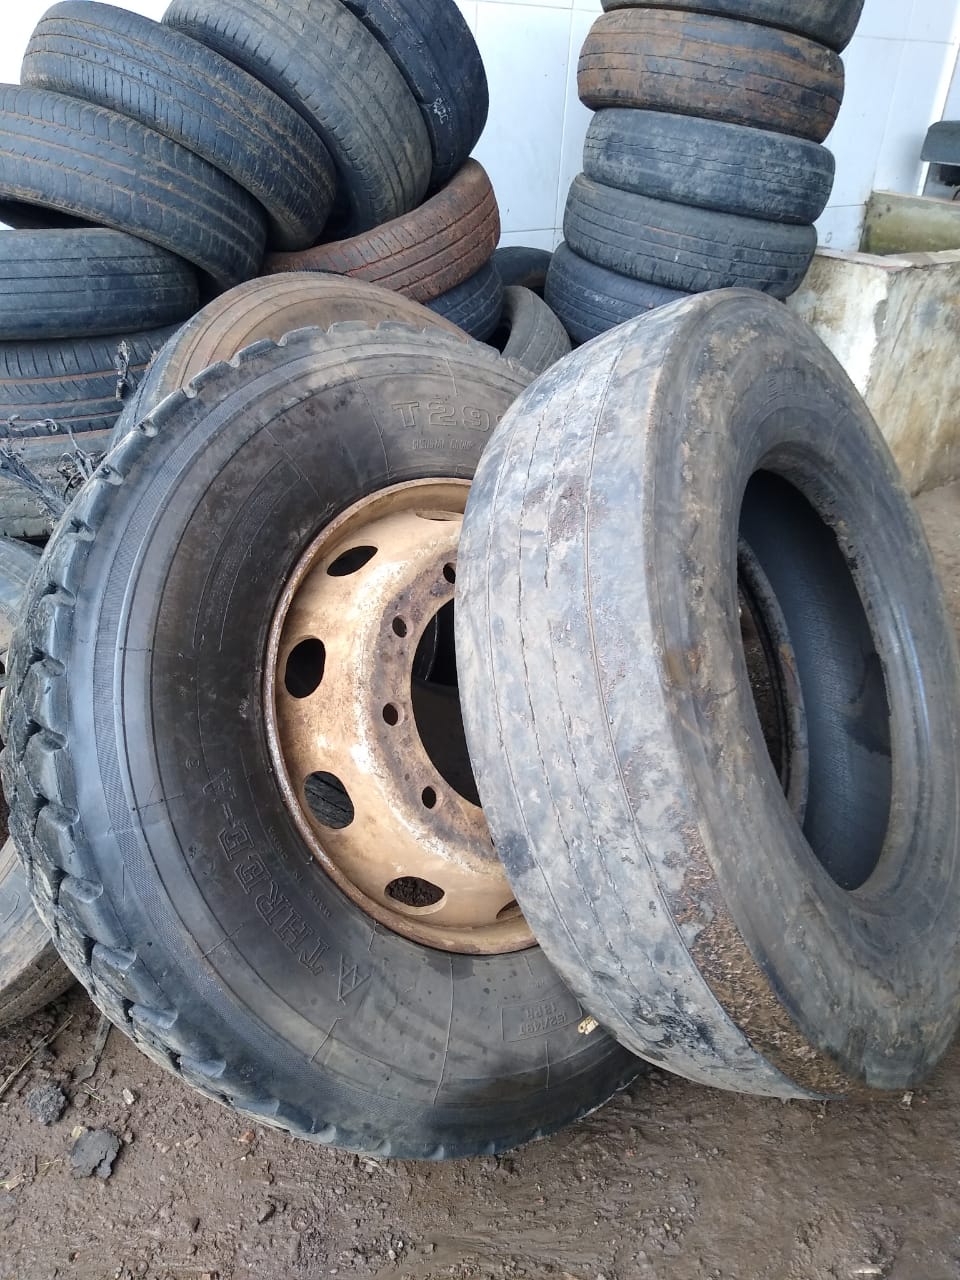 Read more about the article Campanha de coleta de pneus inservíveis segue até sexta-feira em Faxinal dos Guedes